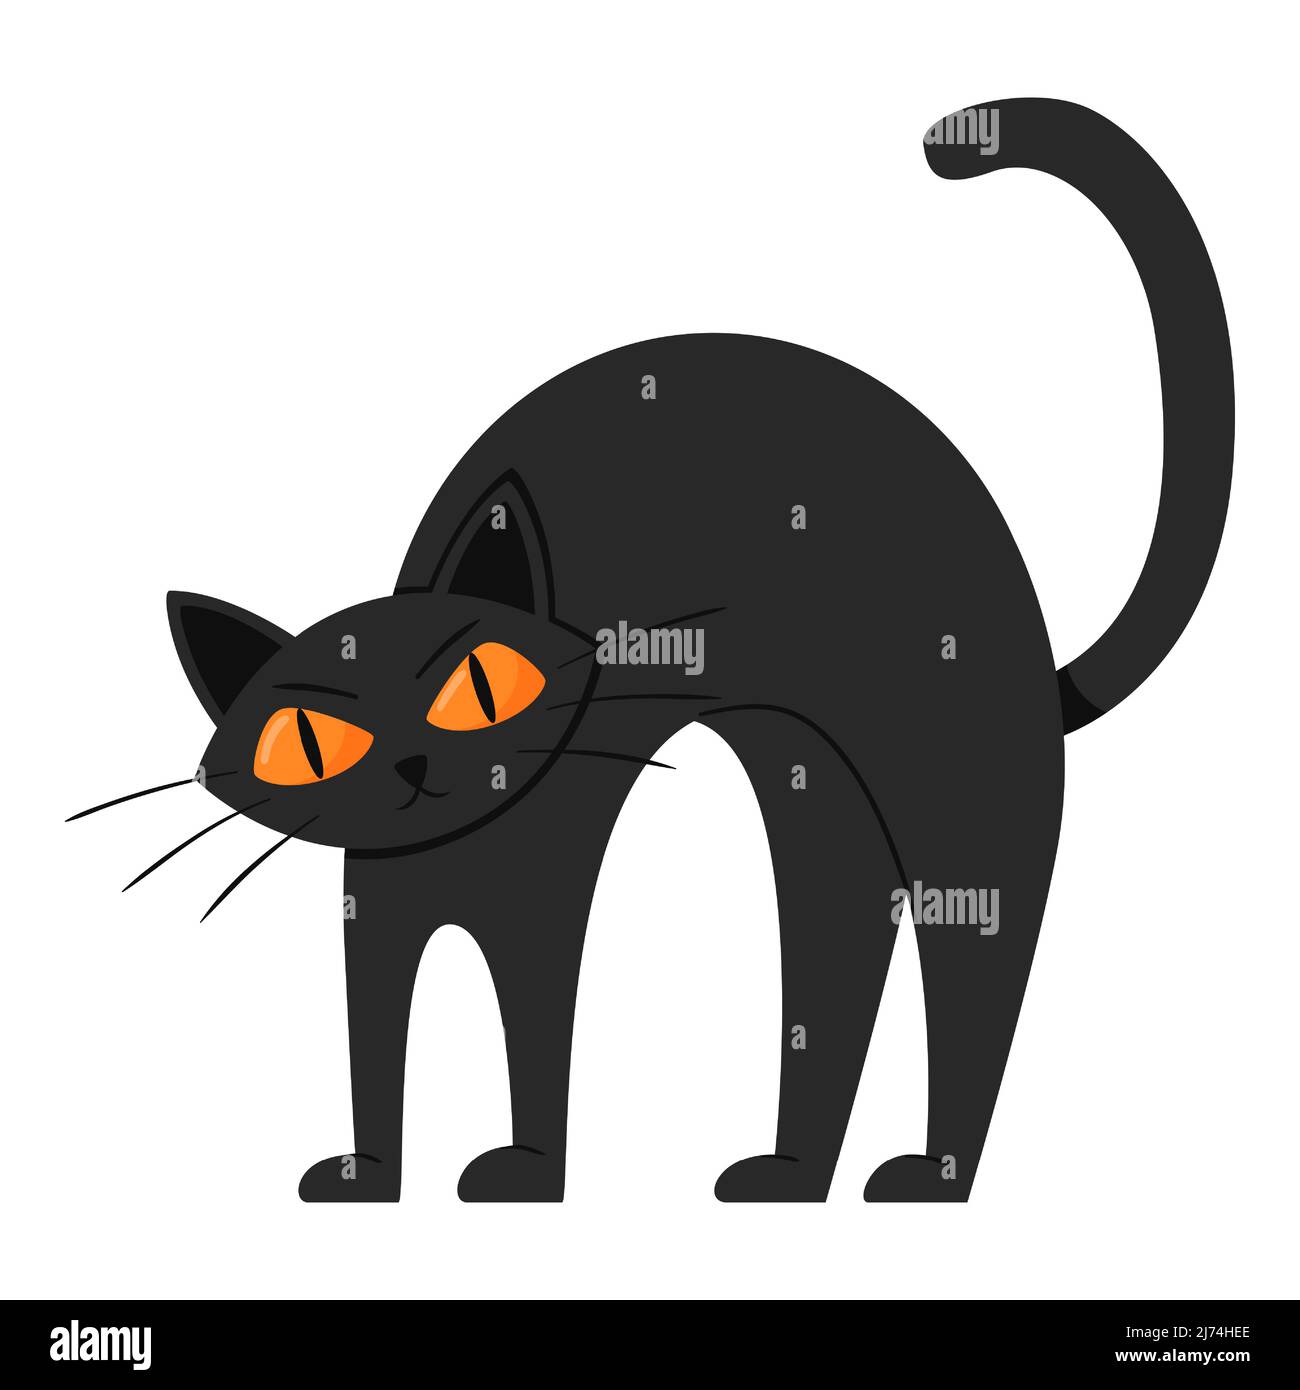 Eine wütende, runzelige schwarze Katze krümmte sich den Rücken. Flacher Cartoon-Stil. Stock Vektor